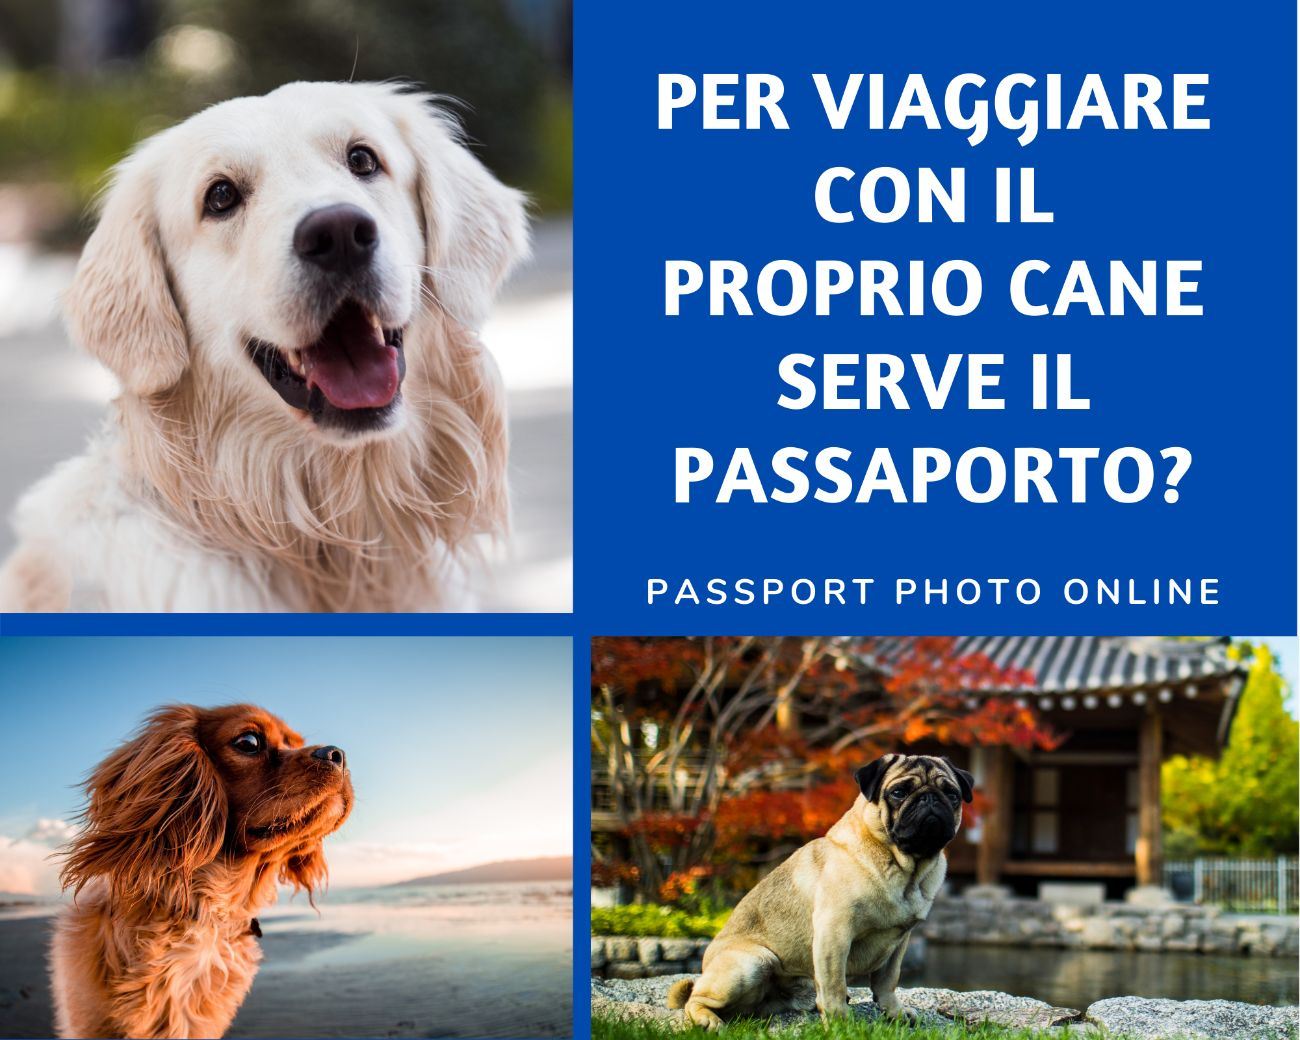 Per viaggiare con il proprio cane serve il passaporto?